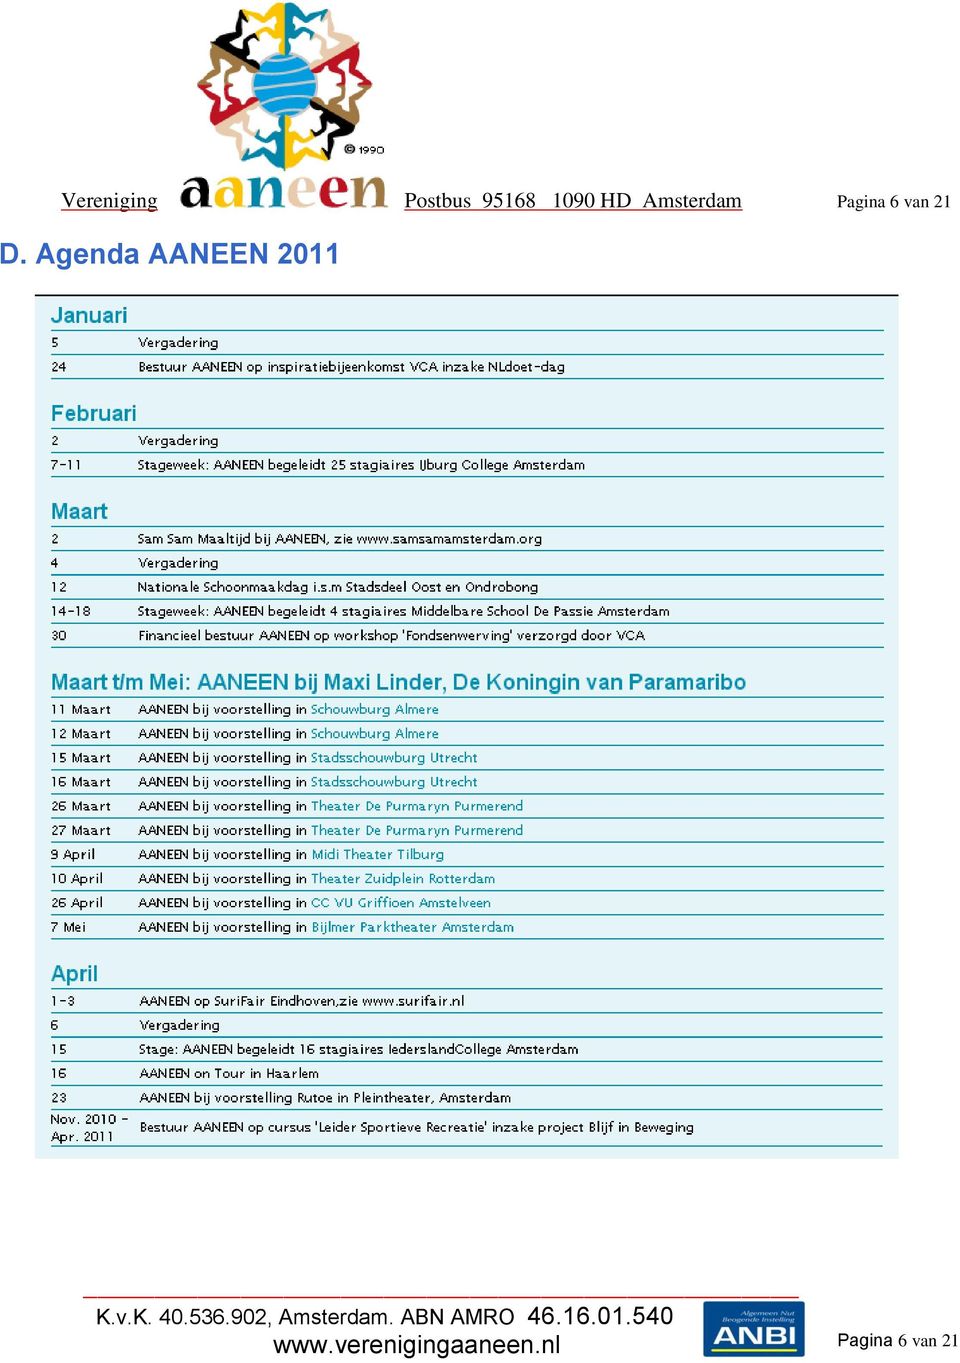 D. Agenda AANEEN 2011 www.